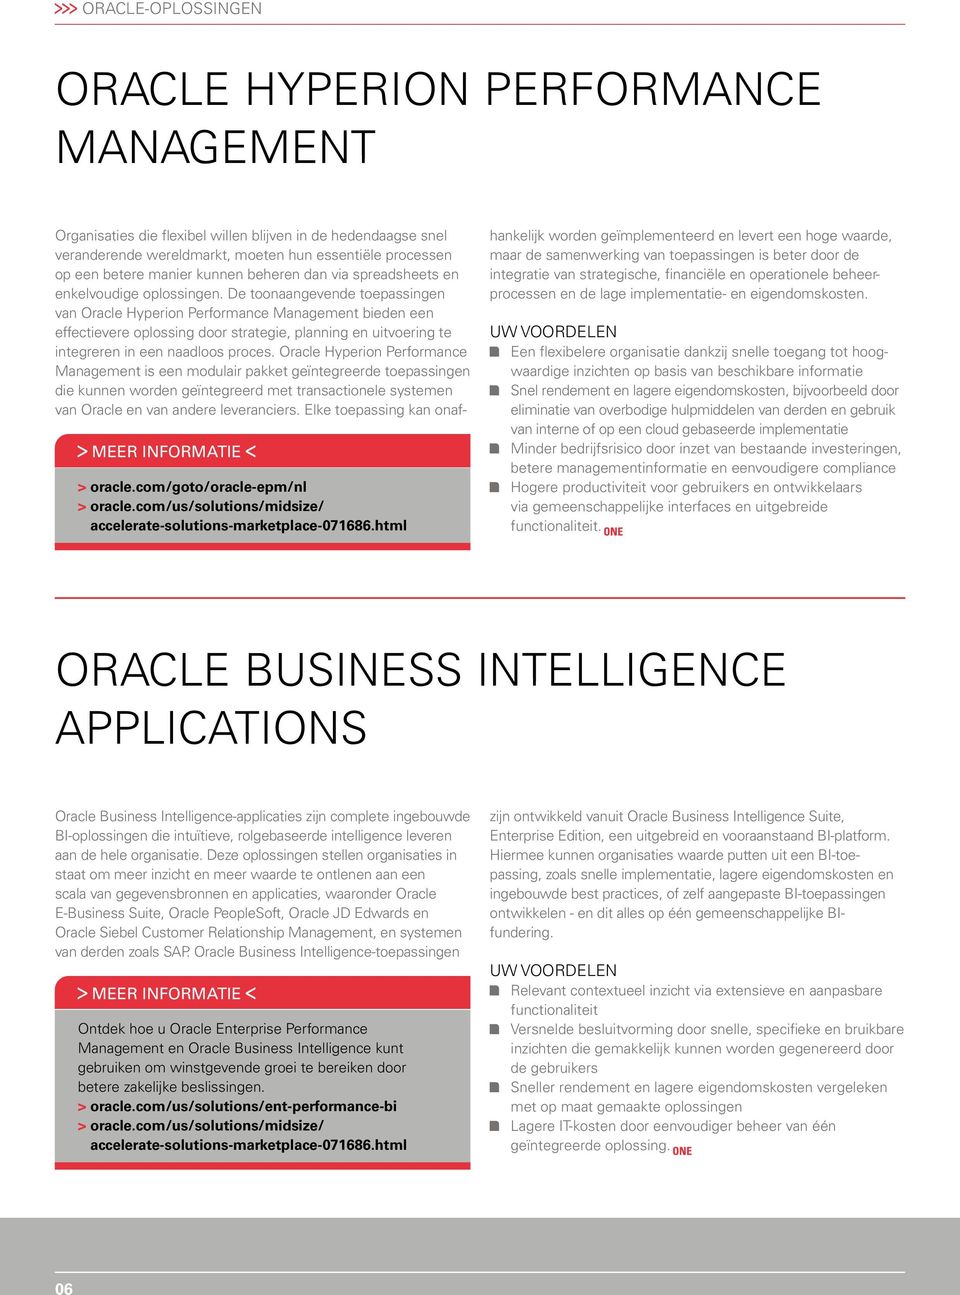 oplossingen. De toonaangevende toepassingen van Oracle Hyperion Performance Management bieden een effectievere oplossing door strategie, planning en uitvoering te integreren in een naadloos proces.